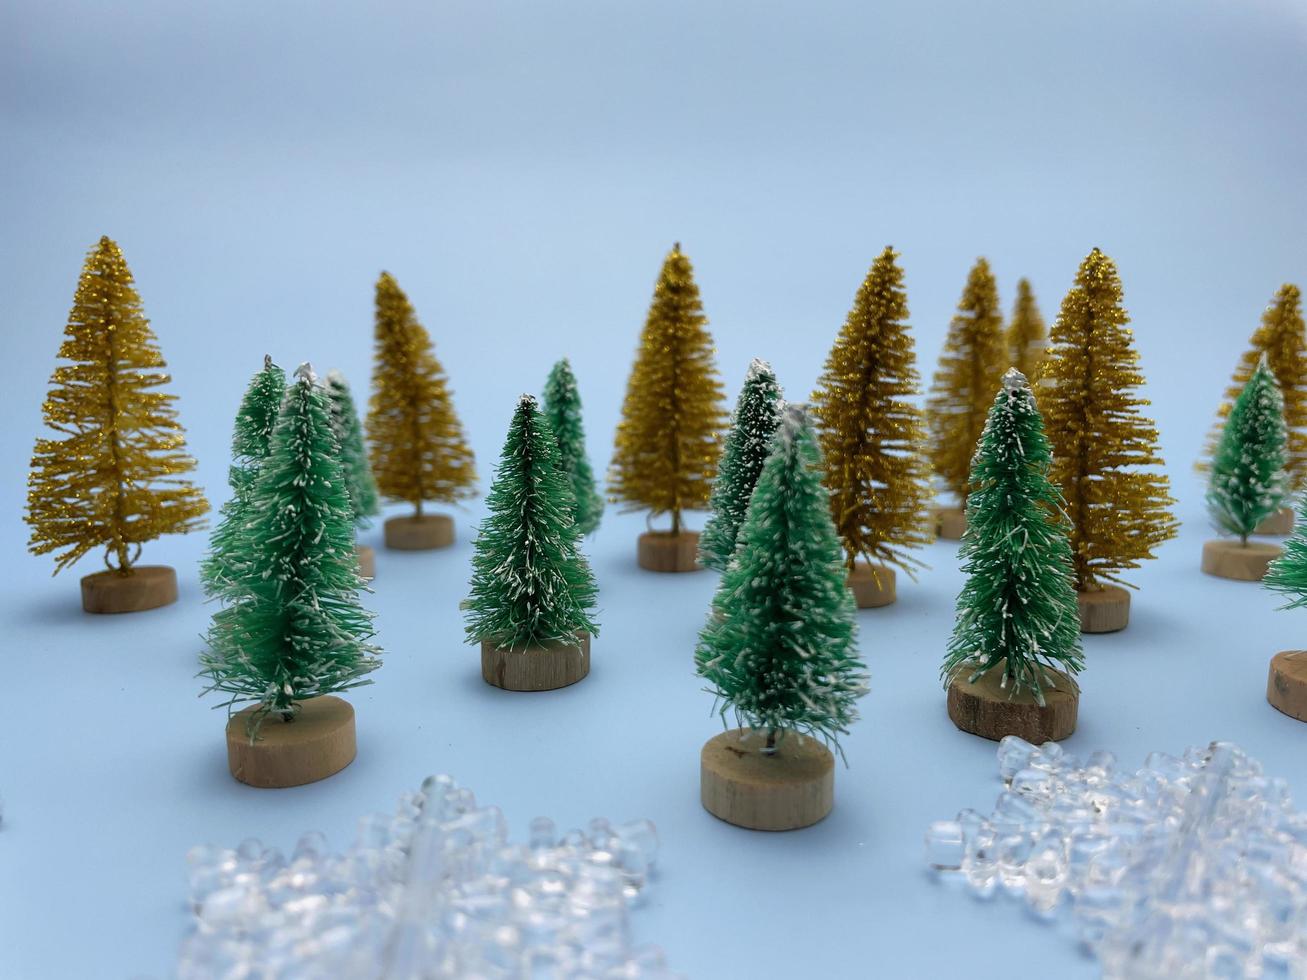 flocons de neige, pins dorés et verts sur fond bleu photo